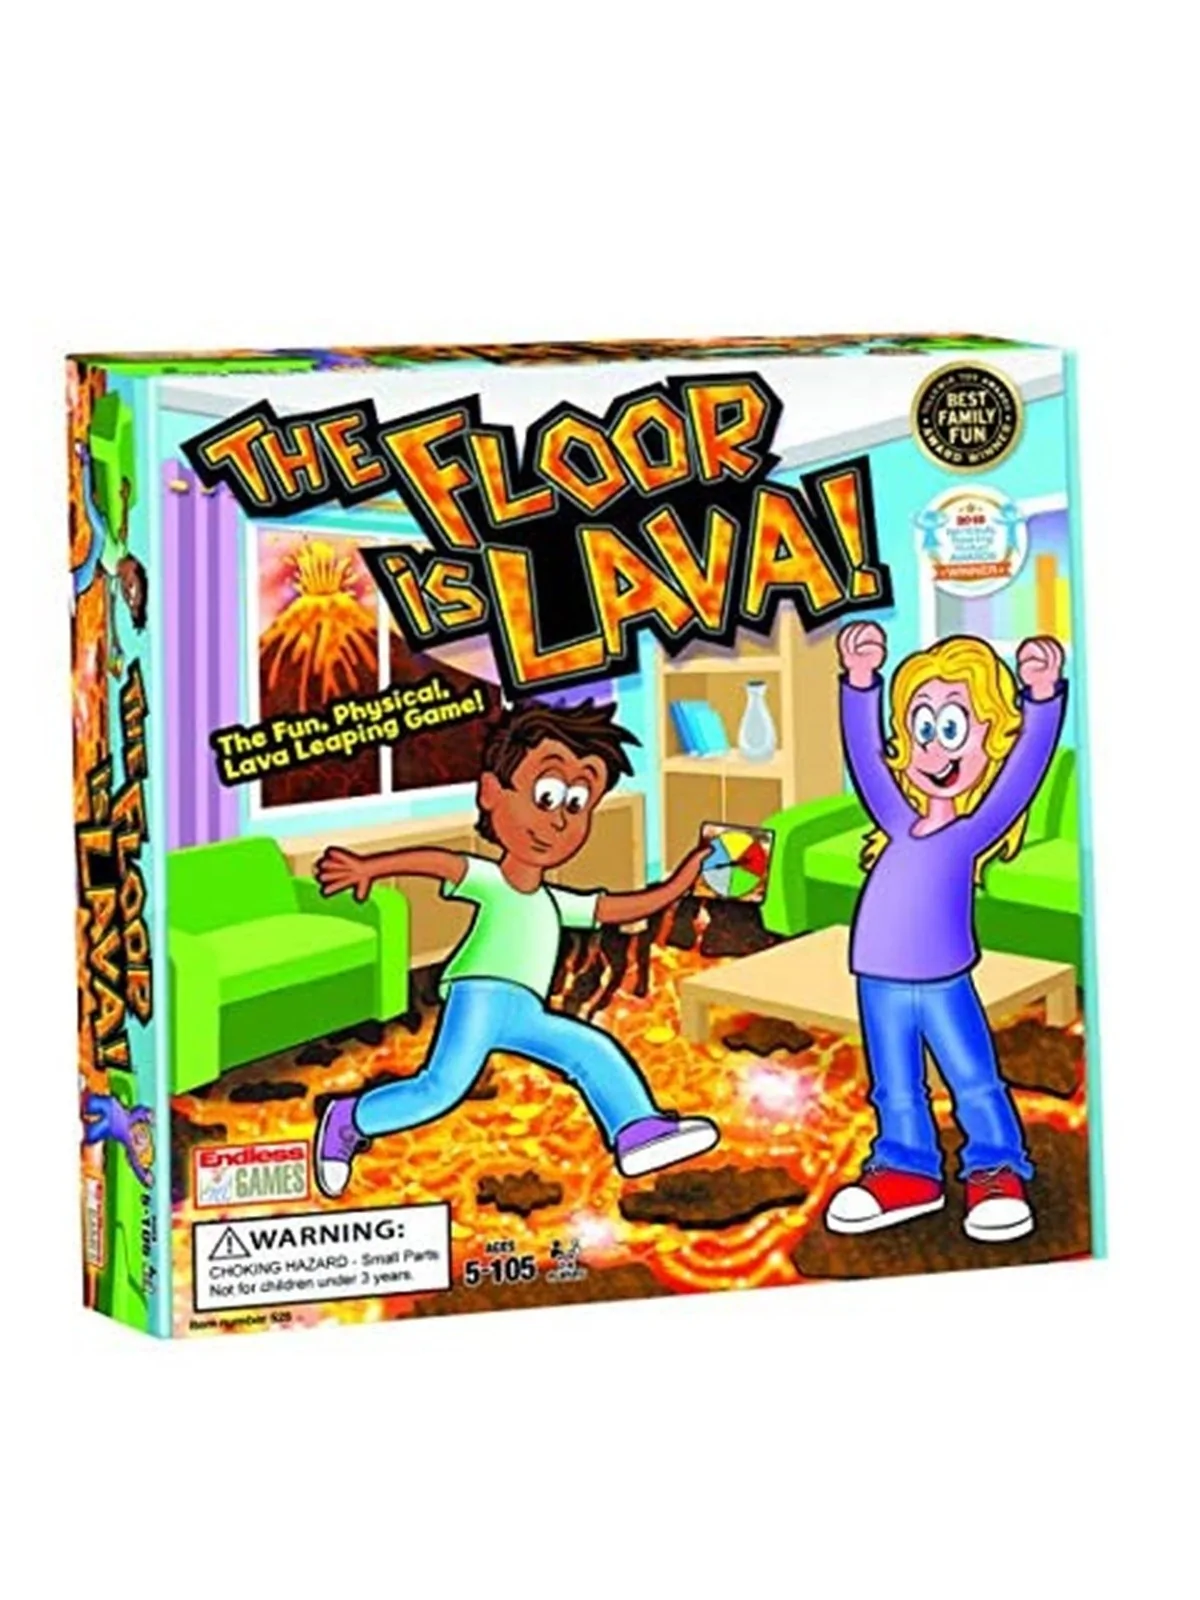 Comprar Floor is Lava barato al mejor precio 19,51 € de Goliath bv